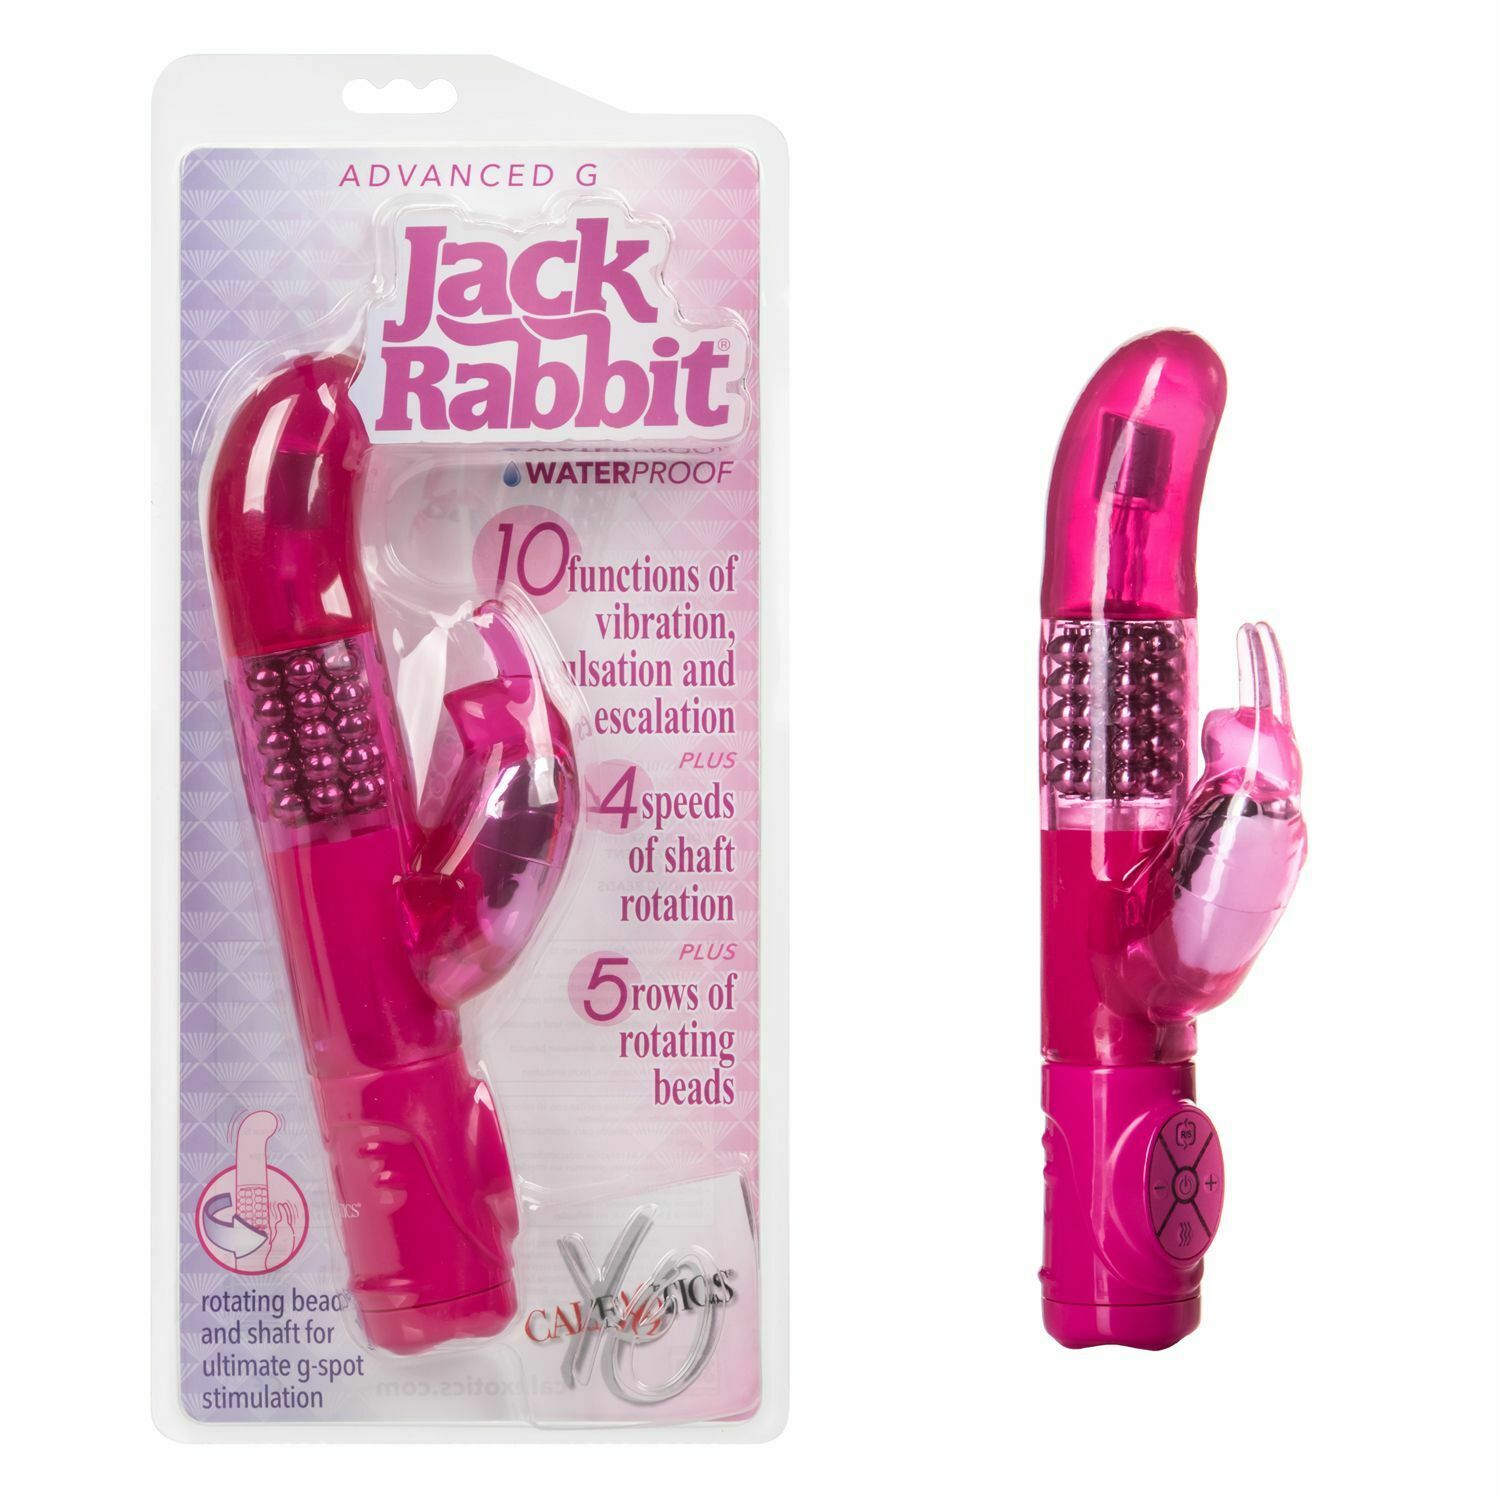 Vibrador Advanced G Jack Rabbit - Pink